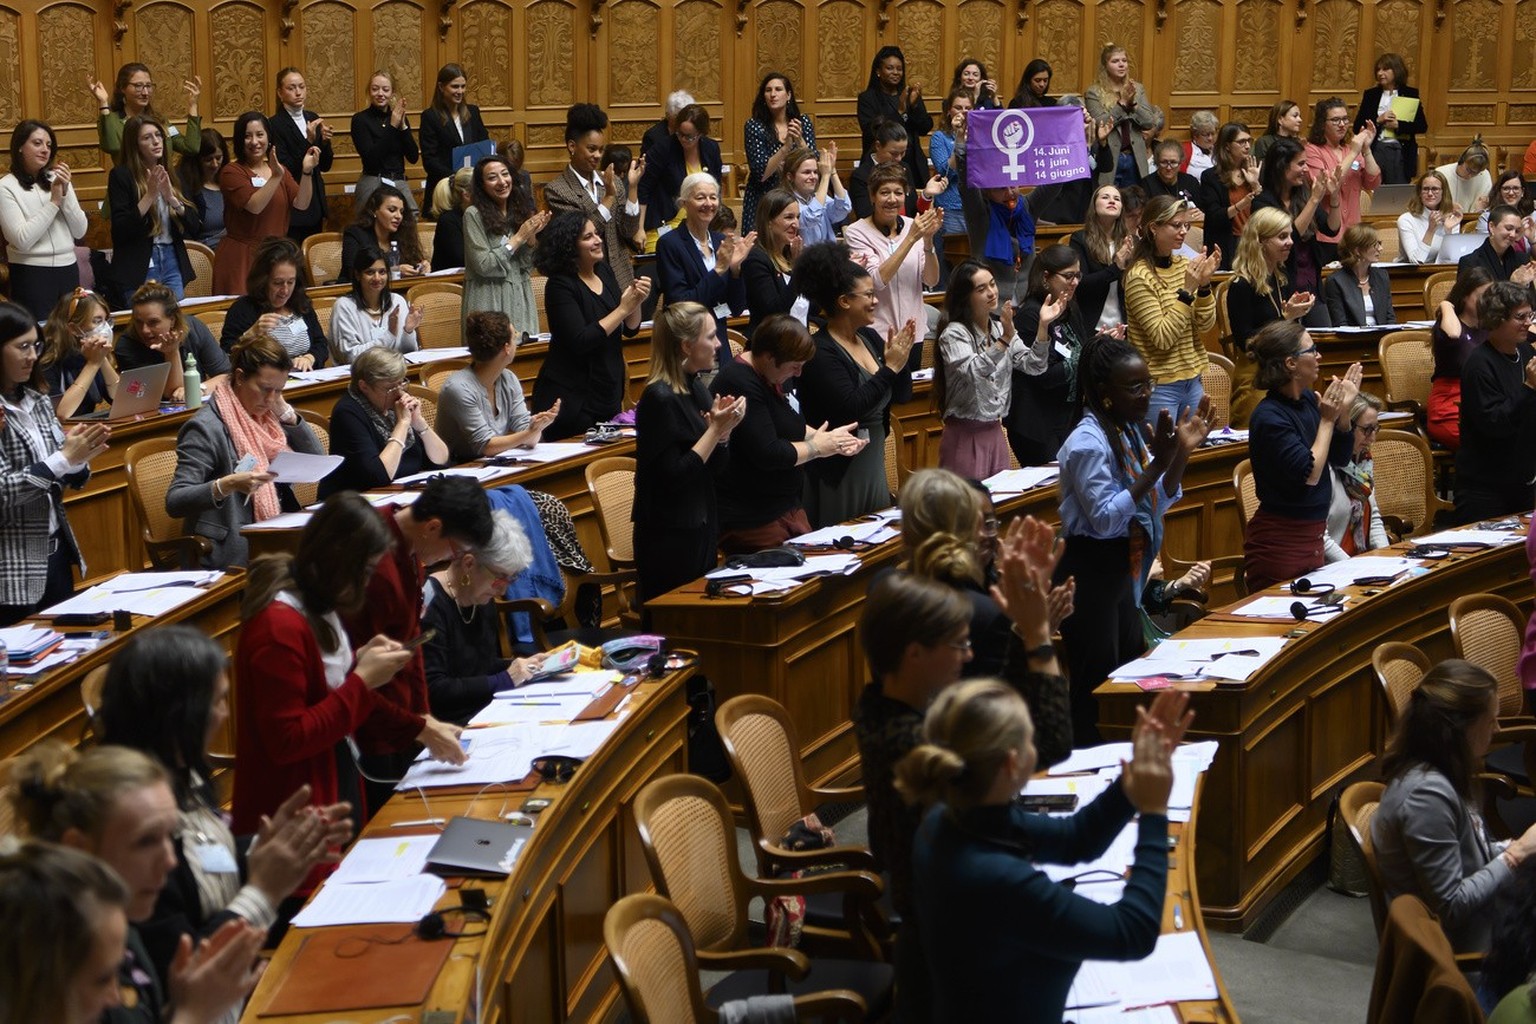 Teilnehmerinnen an der Frauensession reagieren nach eine Abstimmung waehrend der Frauensession 2021, am Samstag, 30. Oktober 2021, im Nationalrat in Bern. (KEYSTONE/Anthony Anex)